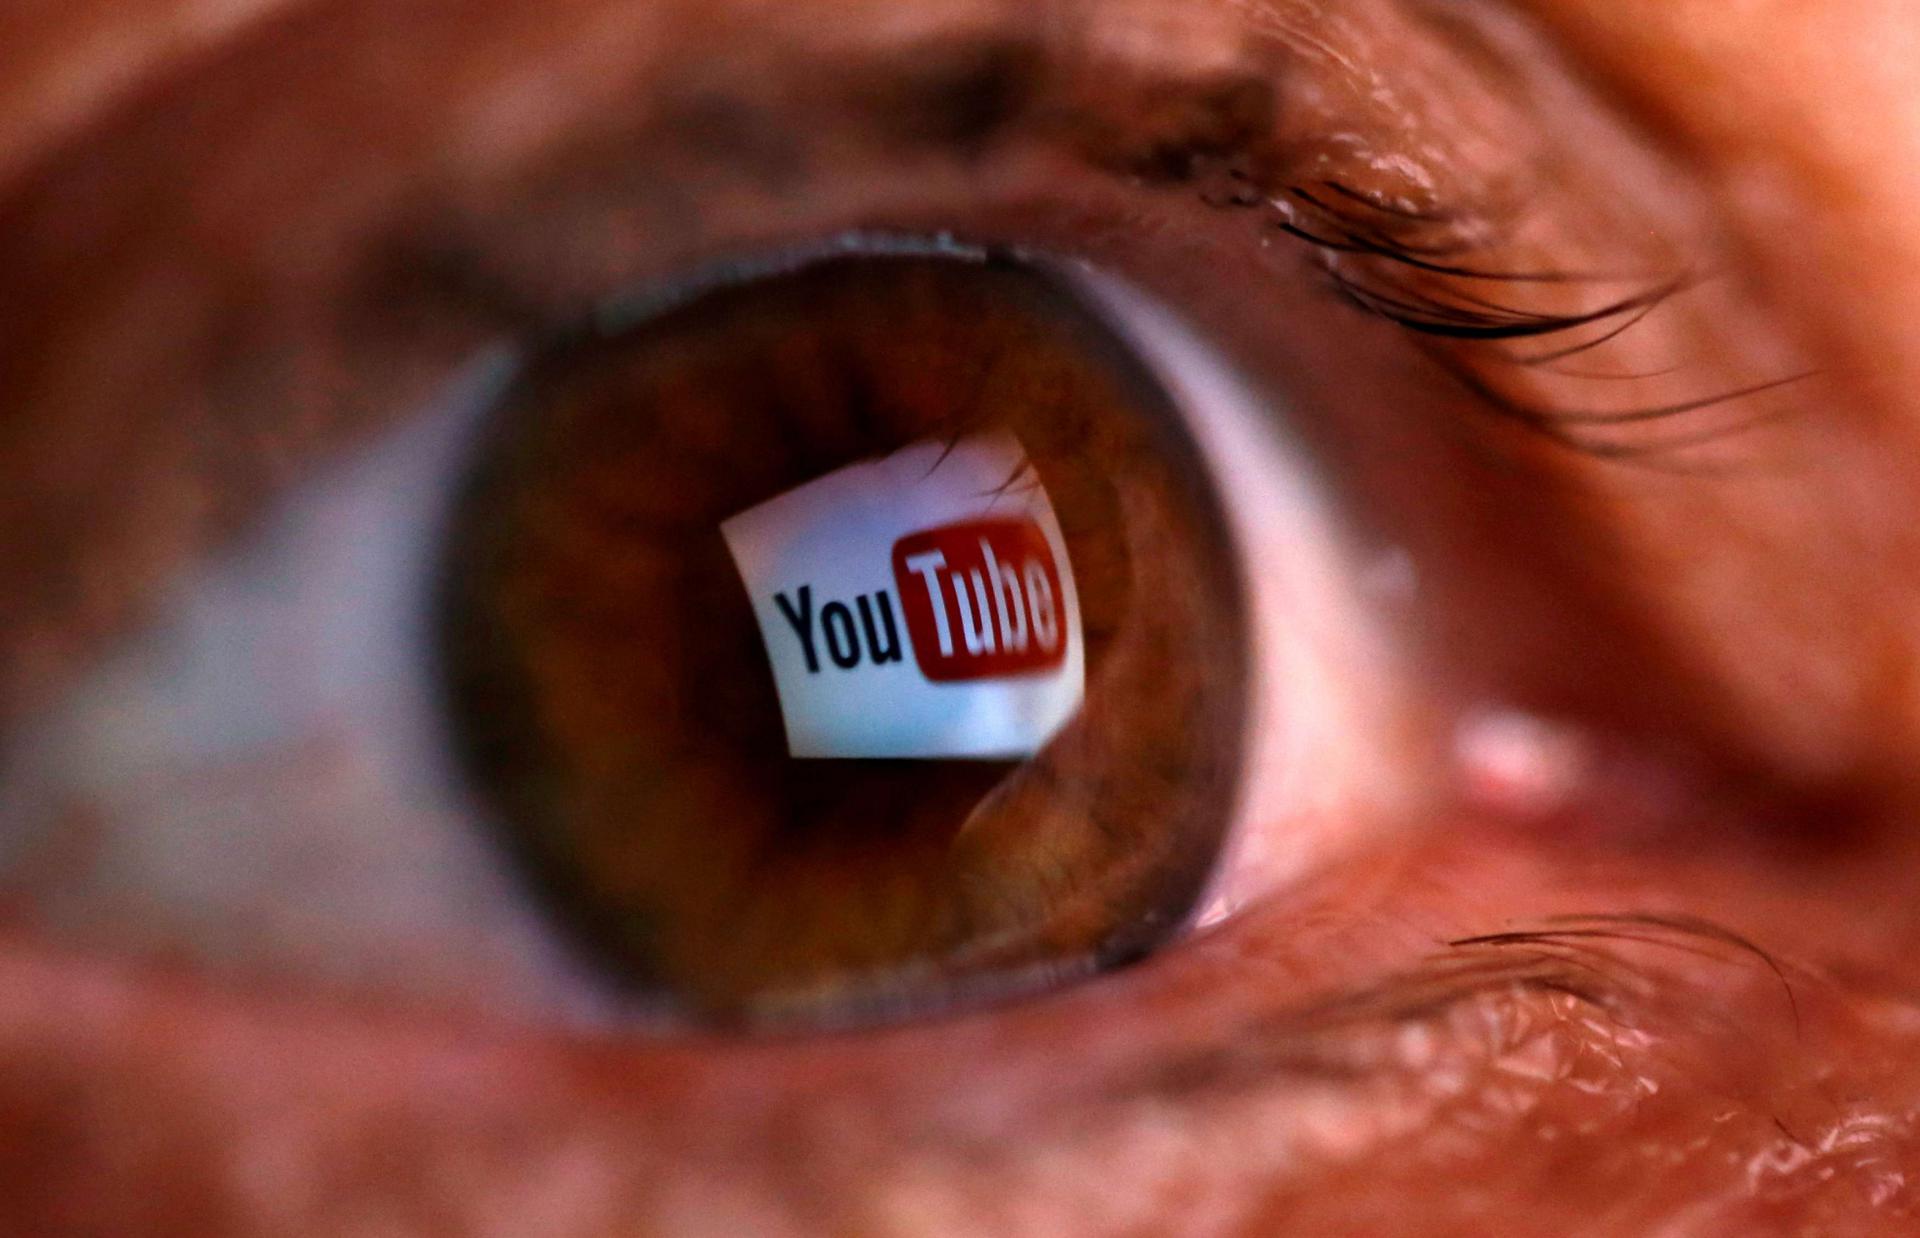 شعار يوتيوب يظهر في عين بشرية